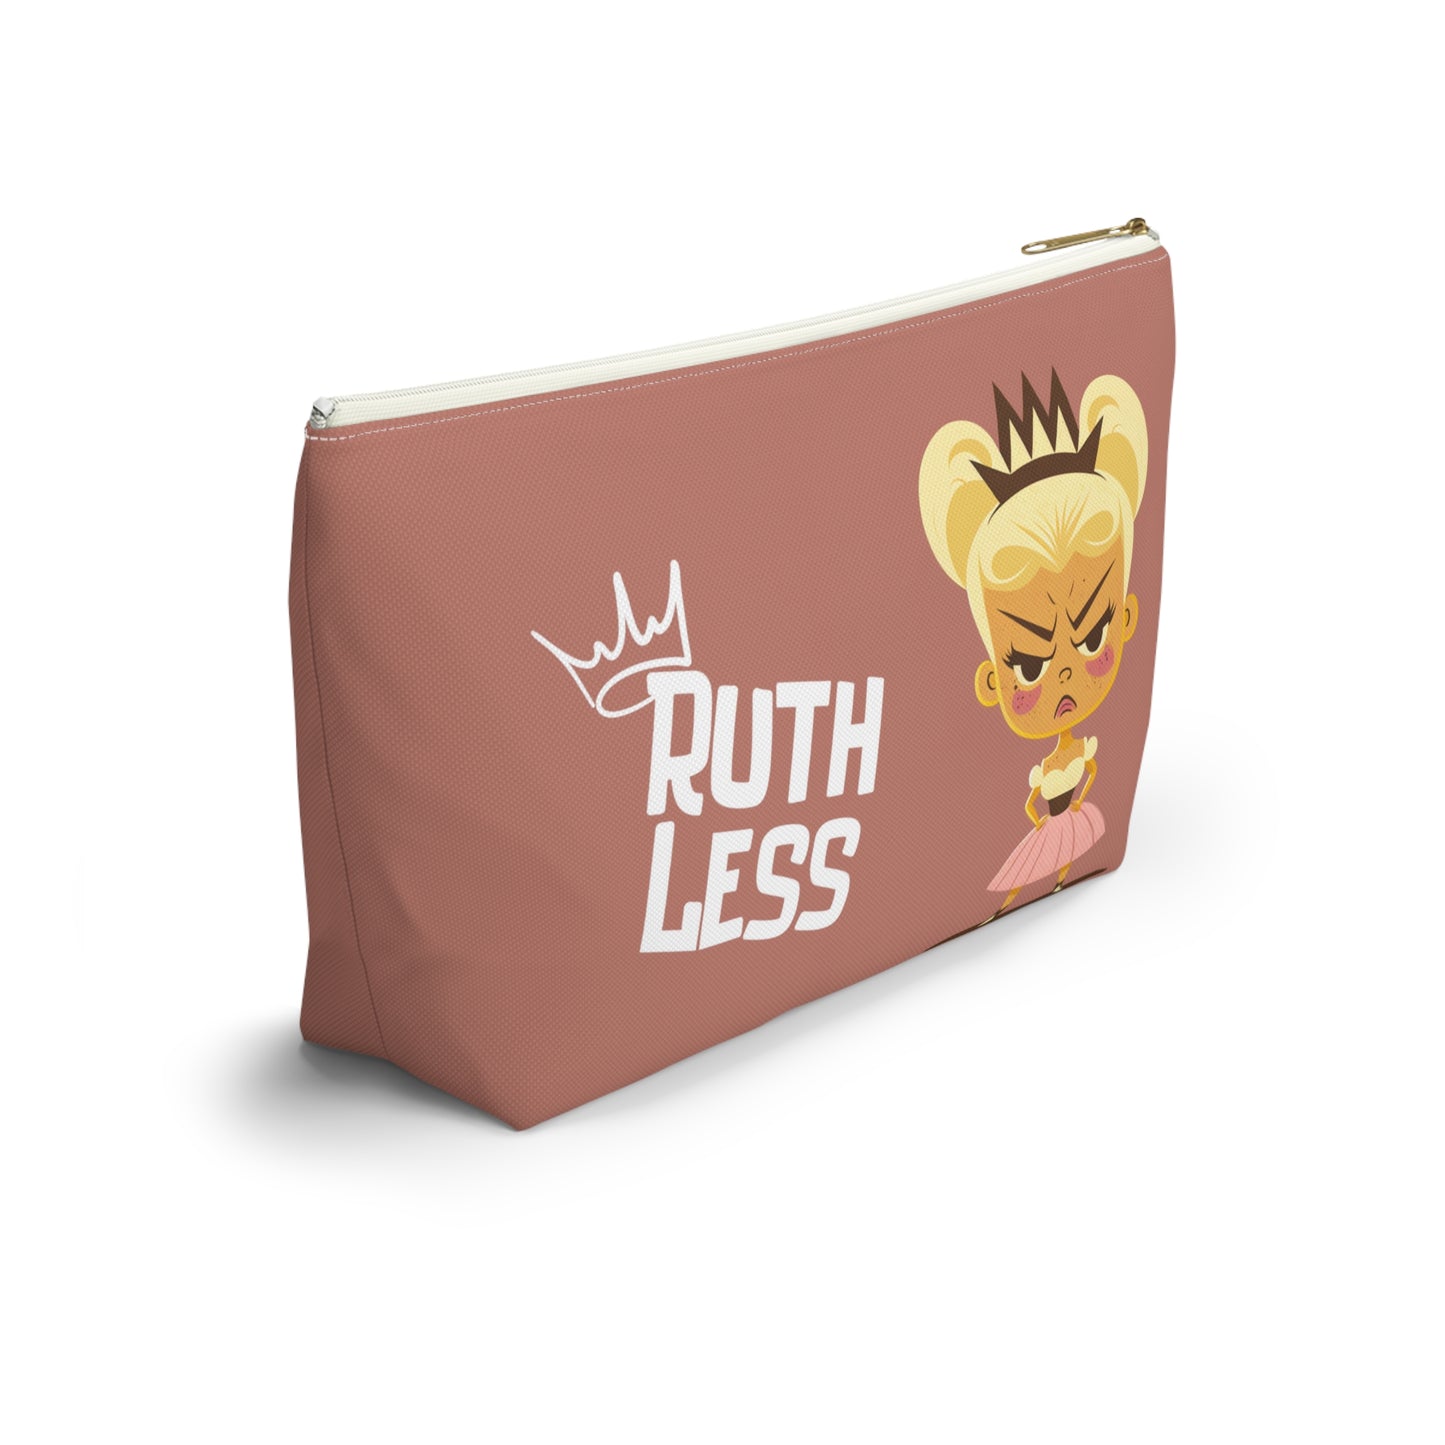 Ruth Less - Princess Pouty Pouch